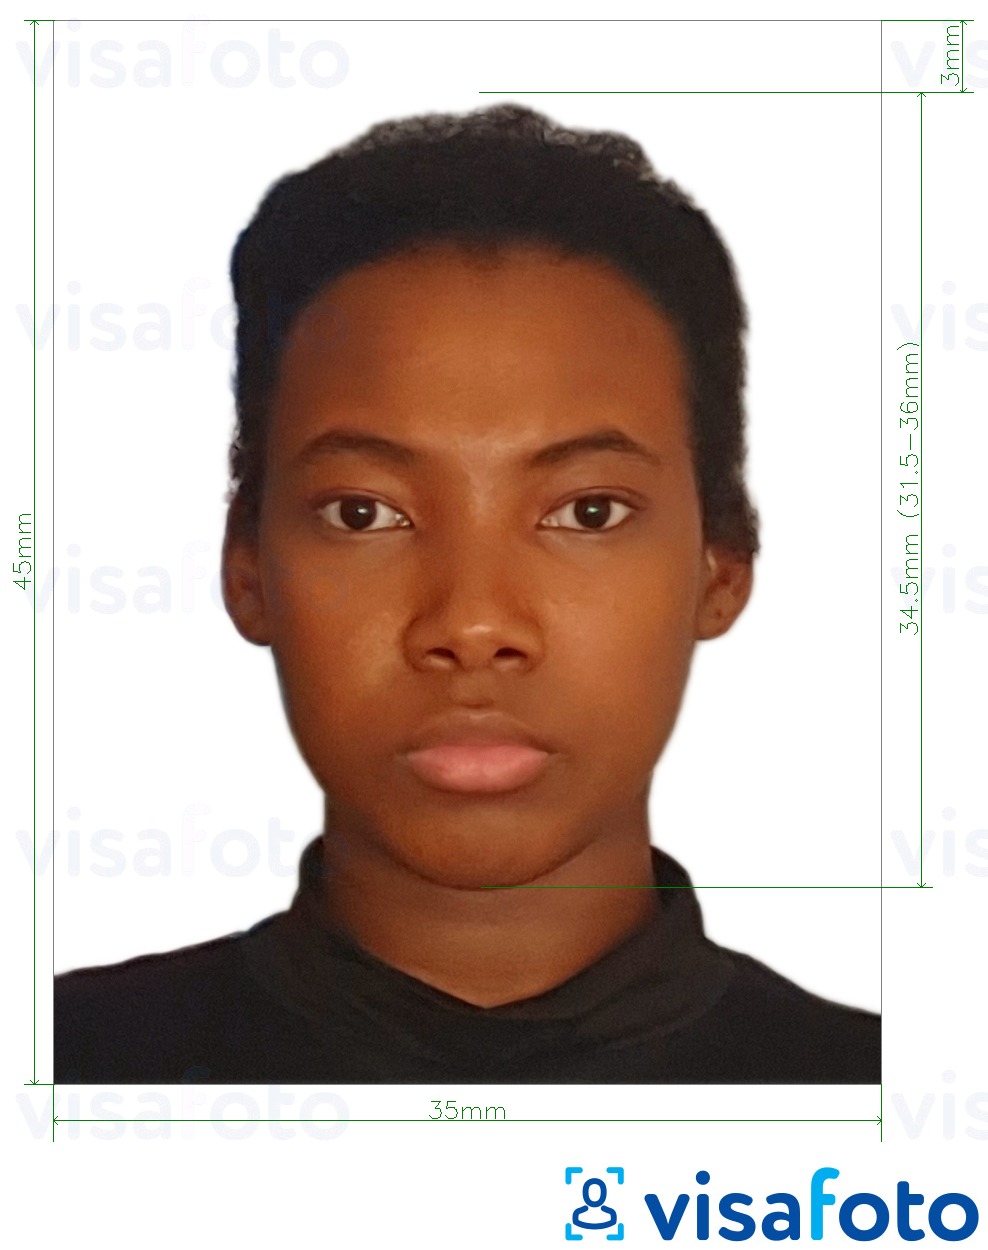 Exemple de foto per a Malawi passaport 4,5x3,5 cm (45x35 mm) amb la mida exacta especificada